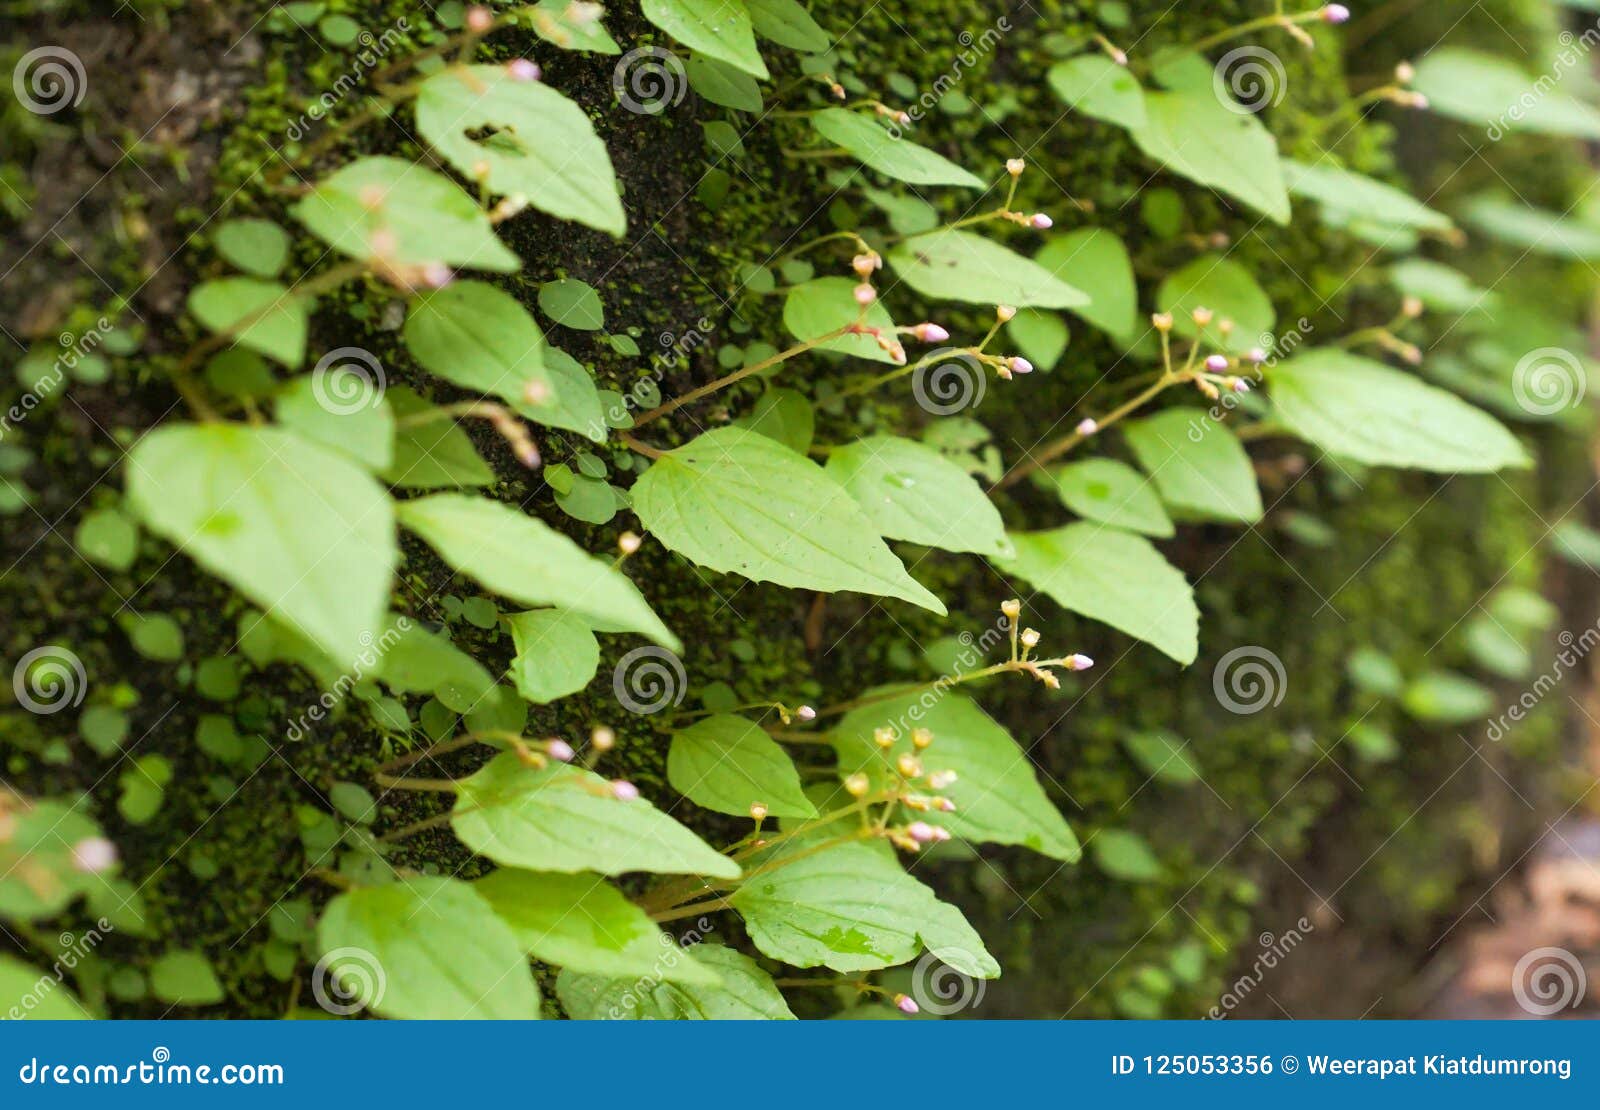 Plantas Verdes Da Trepadeira Na Rocha Foto de Stock - Imagem de plantas,  fundo: 125053356